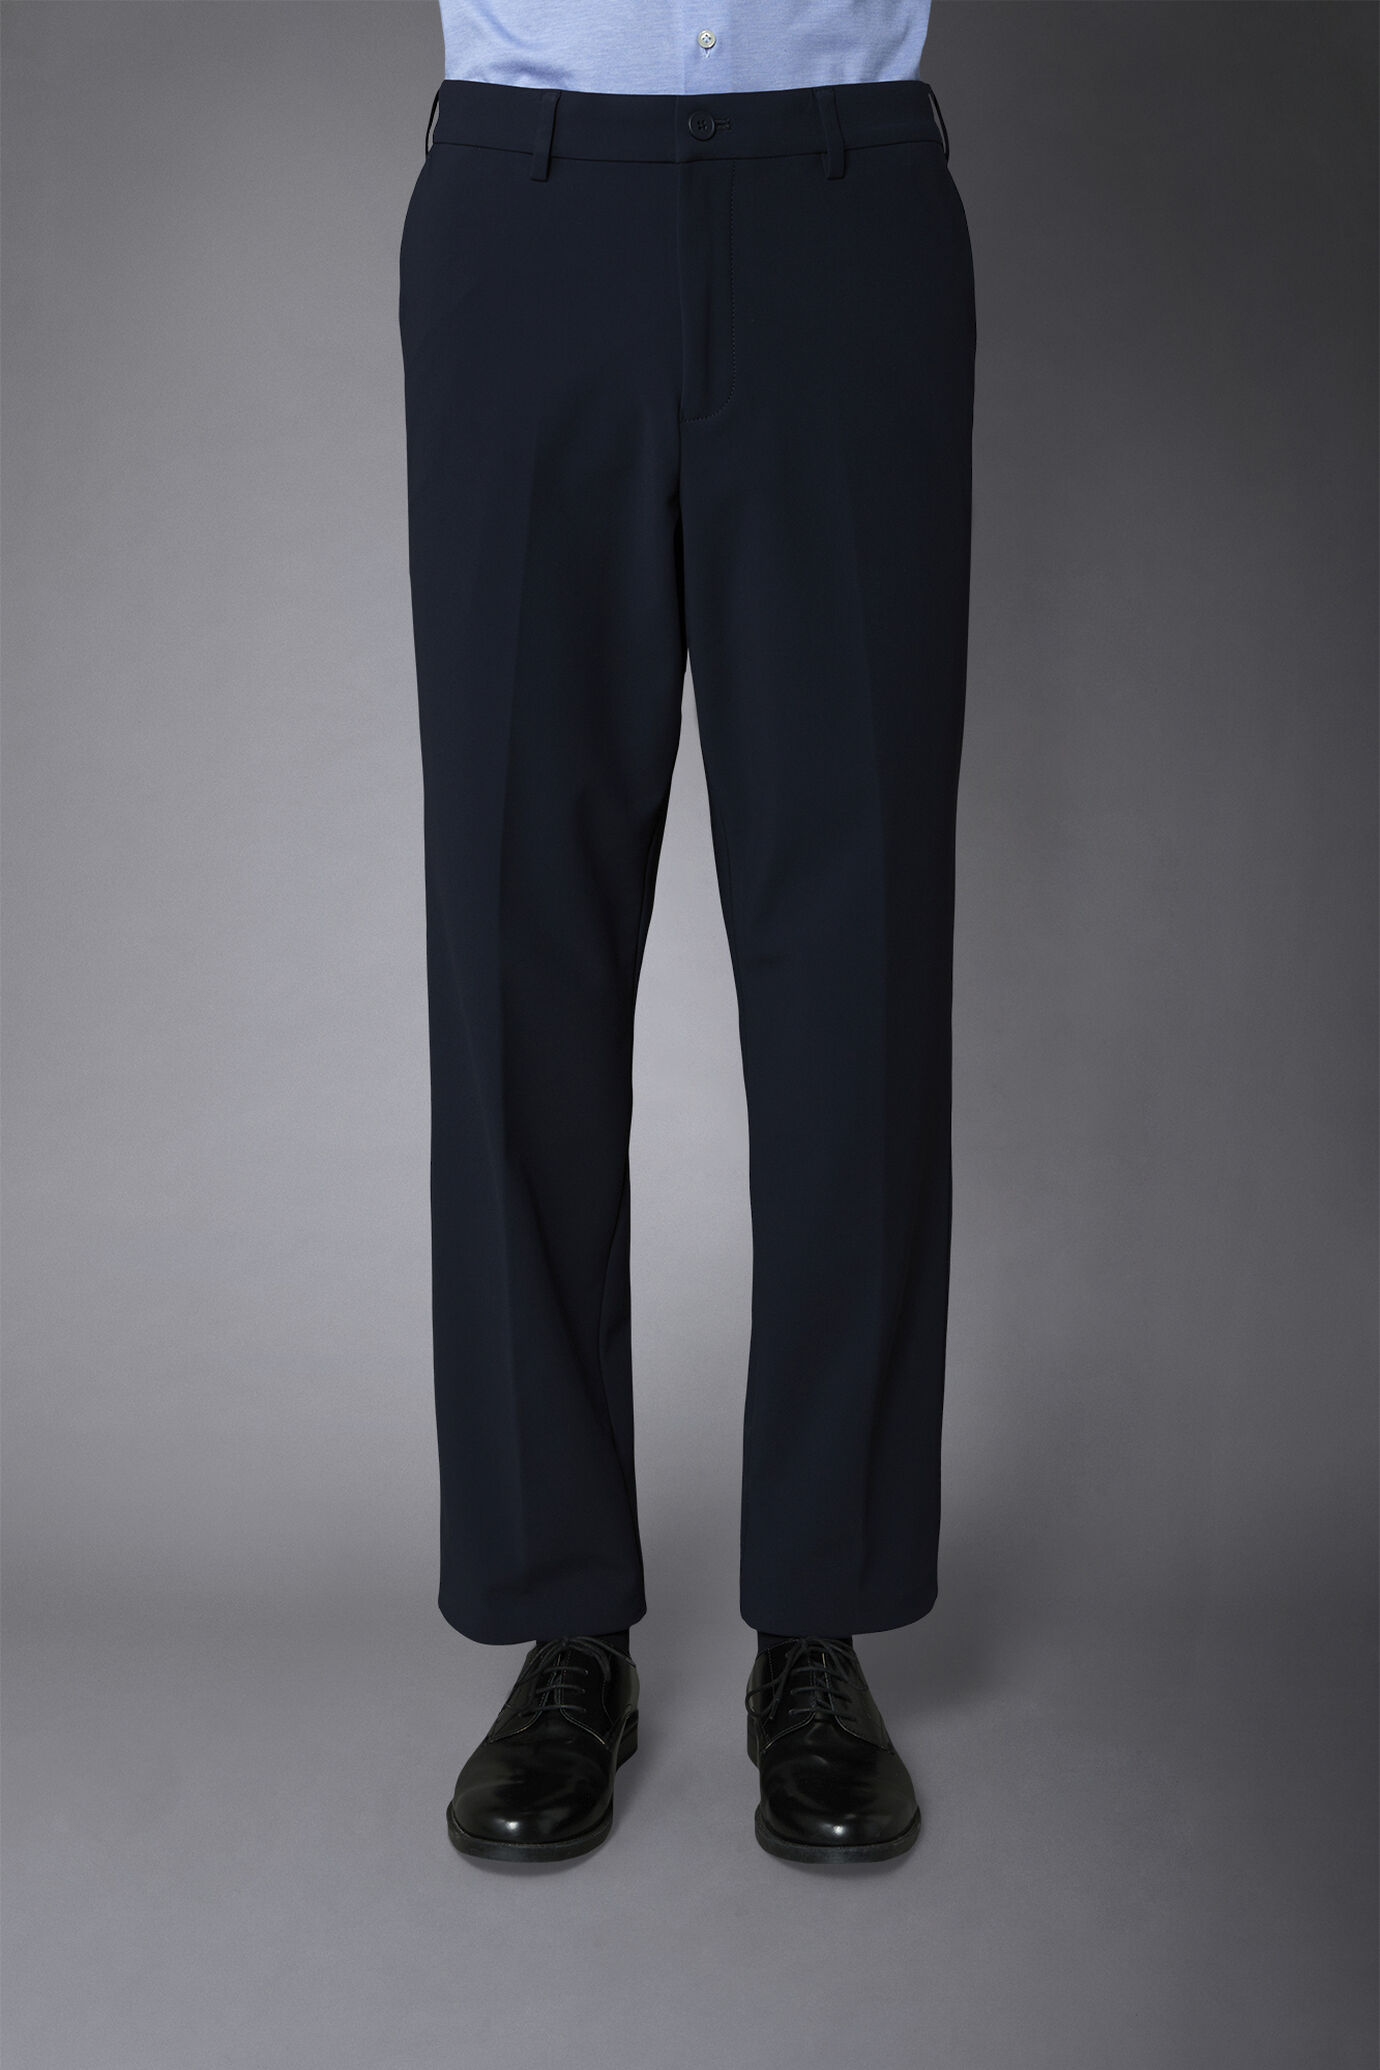 Pantalone chino uomo tessuto in nylon elasticizzato comfort fit image number 3